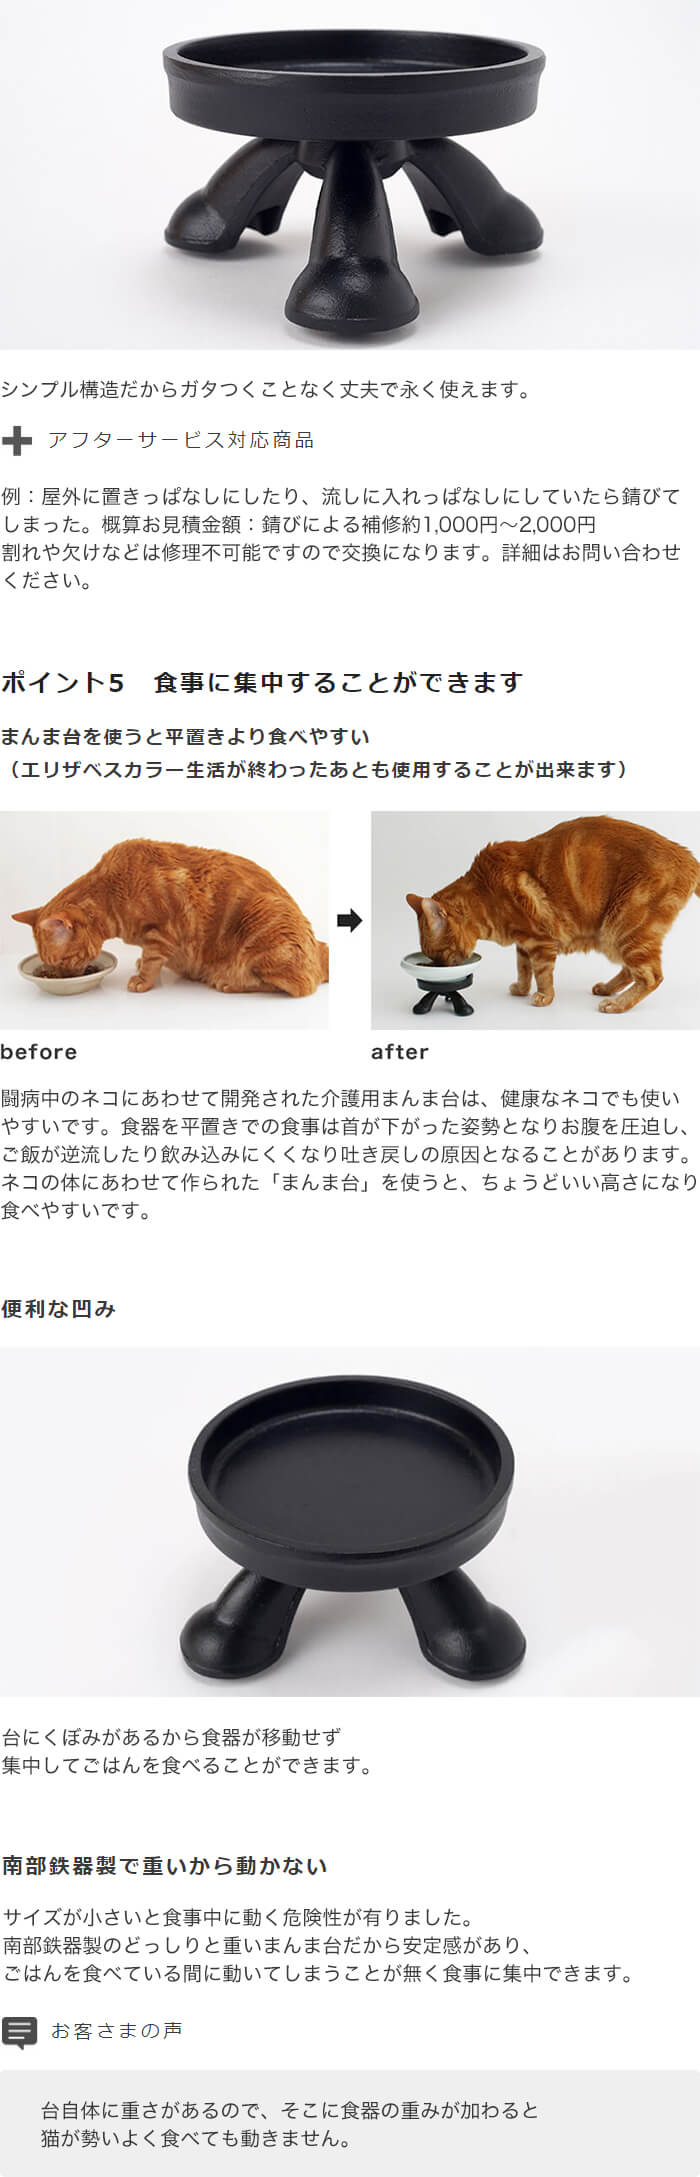 食器台 猫 エリザベスカラー 専用 まんま台 南部鉄器 日本製 食器別売り Nekozuki ねこずき 猫用品の販売